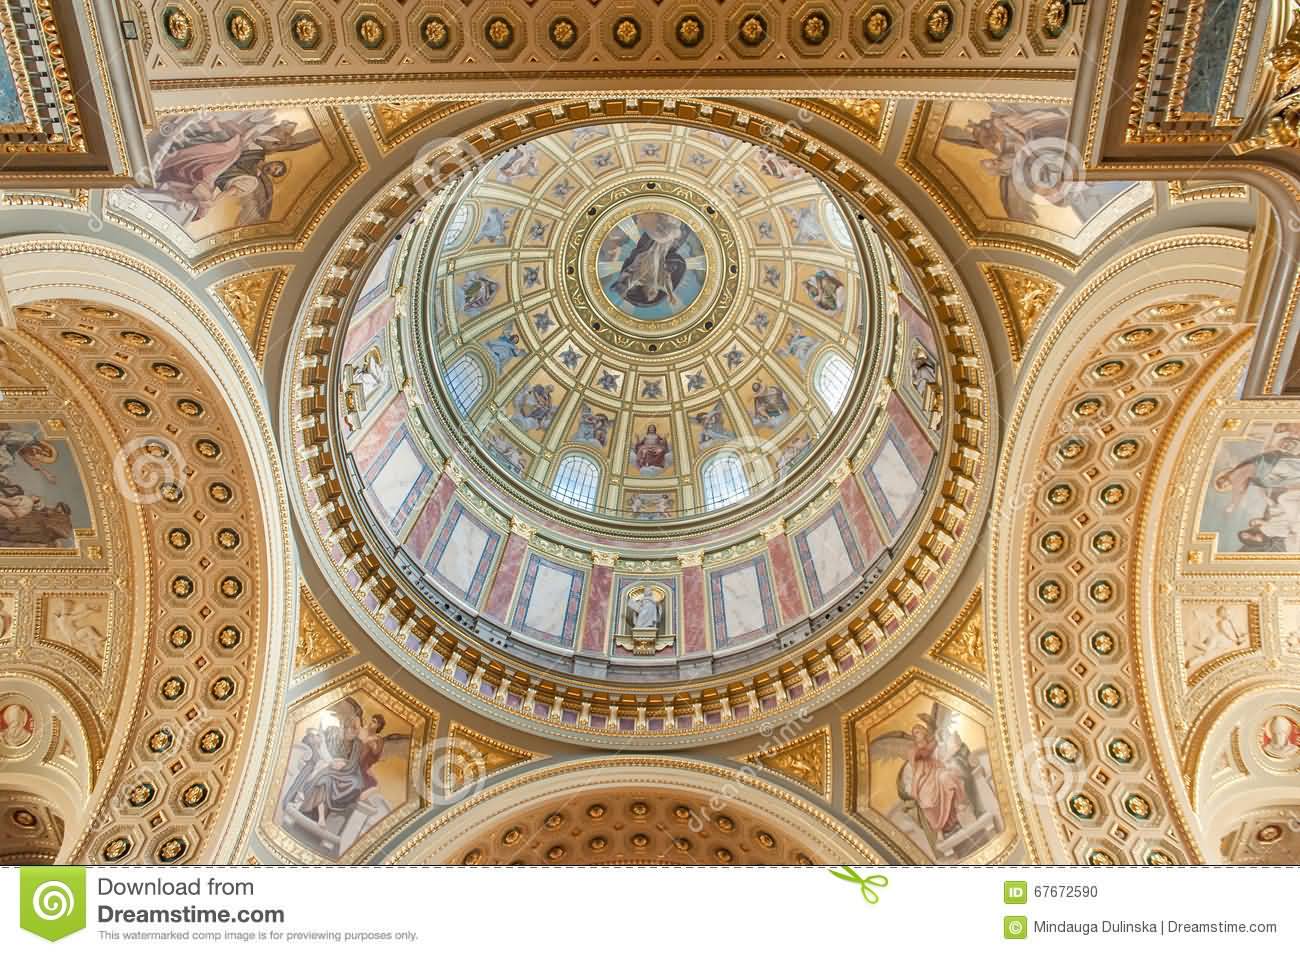 Ceiling Details Inside St. Stephen’s Basilica